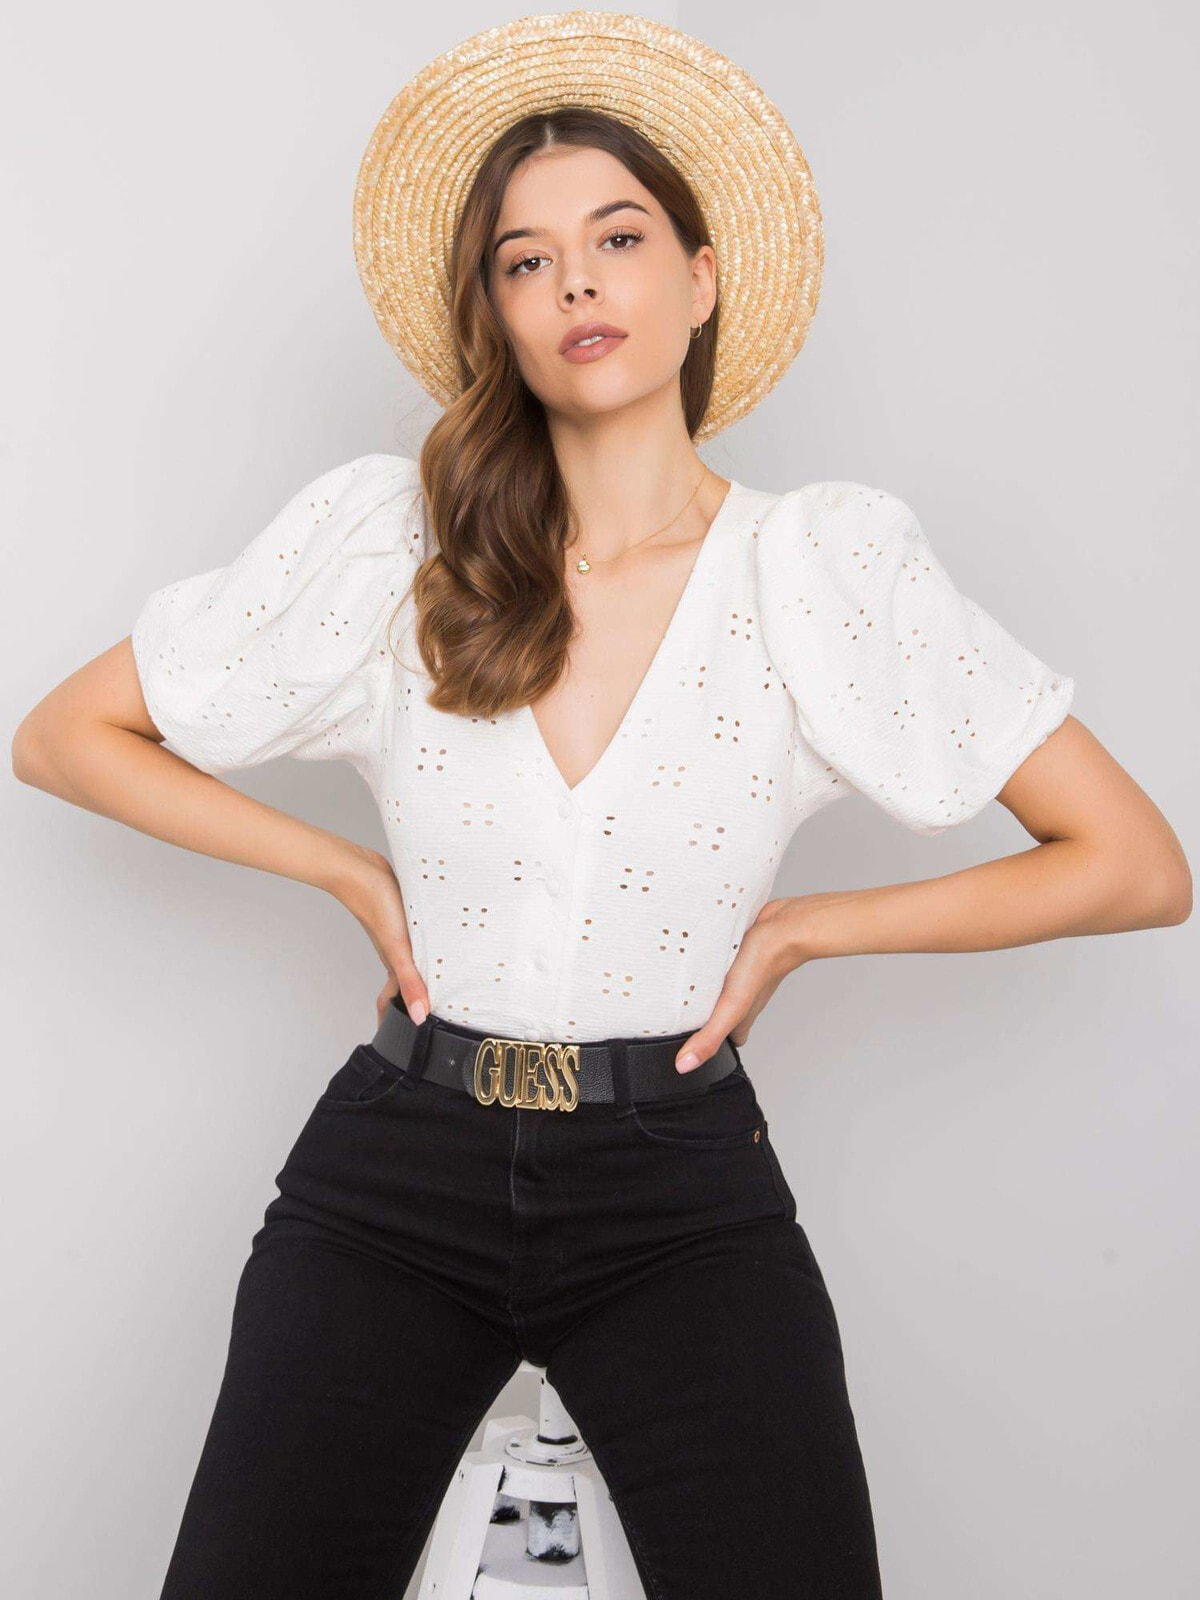 Женская блузка с объемным коротким рукавом и треугольным вырезом белая Factory Price